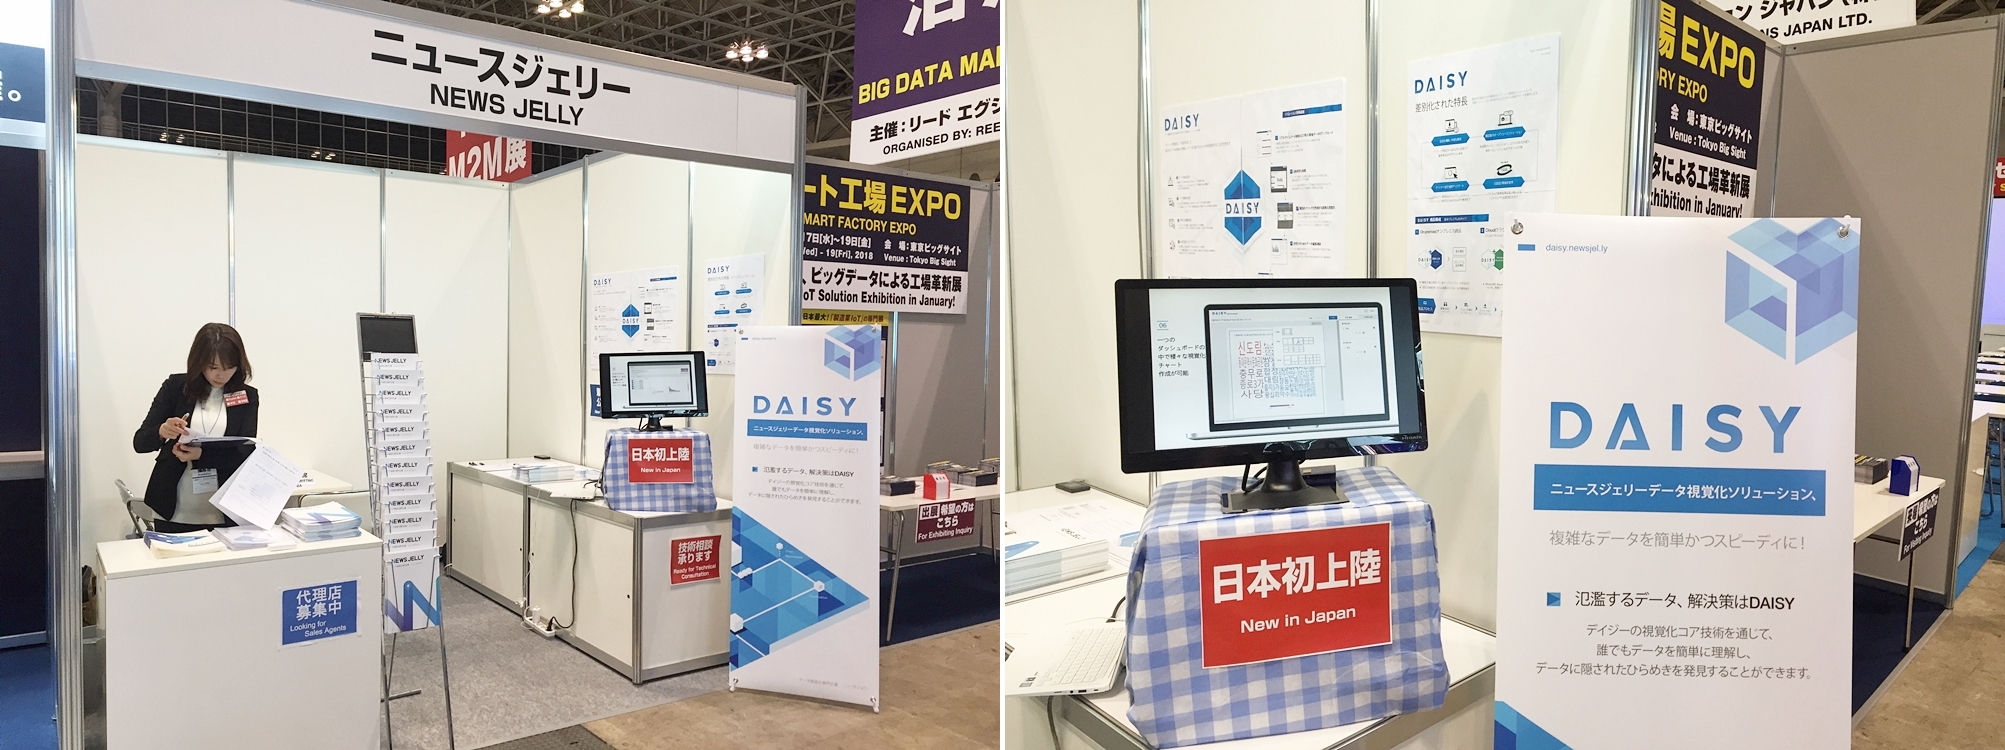 일본 IT Week 전시회에서 참관객들의 관심을 집중시켰던 데이터 시각화 솔루션 DAISY, 현재 일본어 버전을 준비중이다.